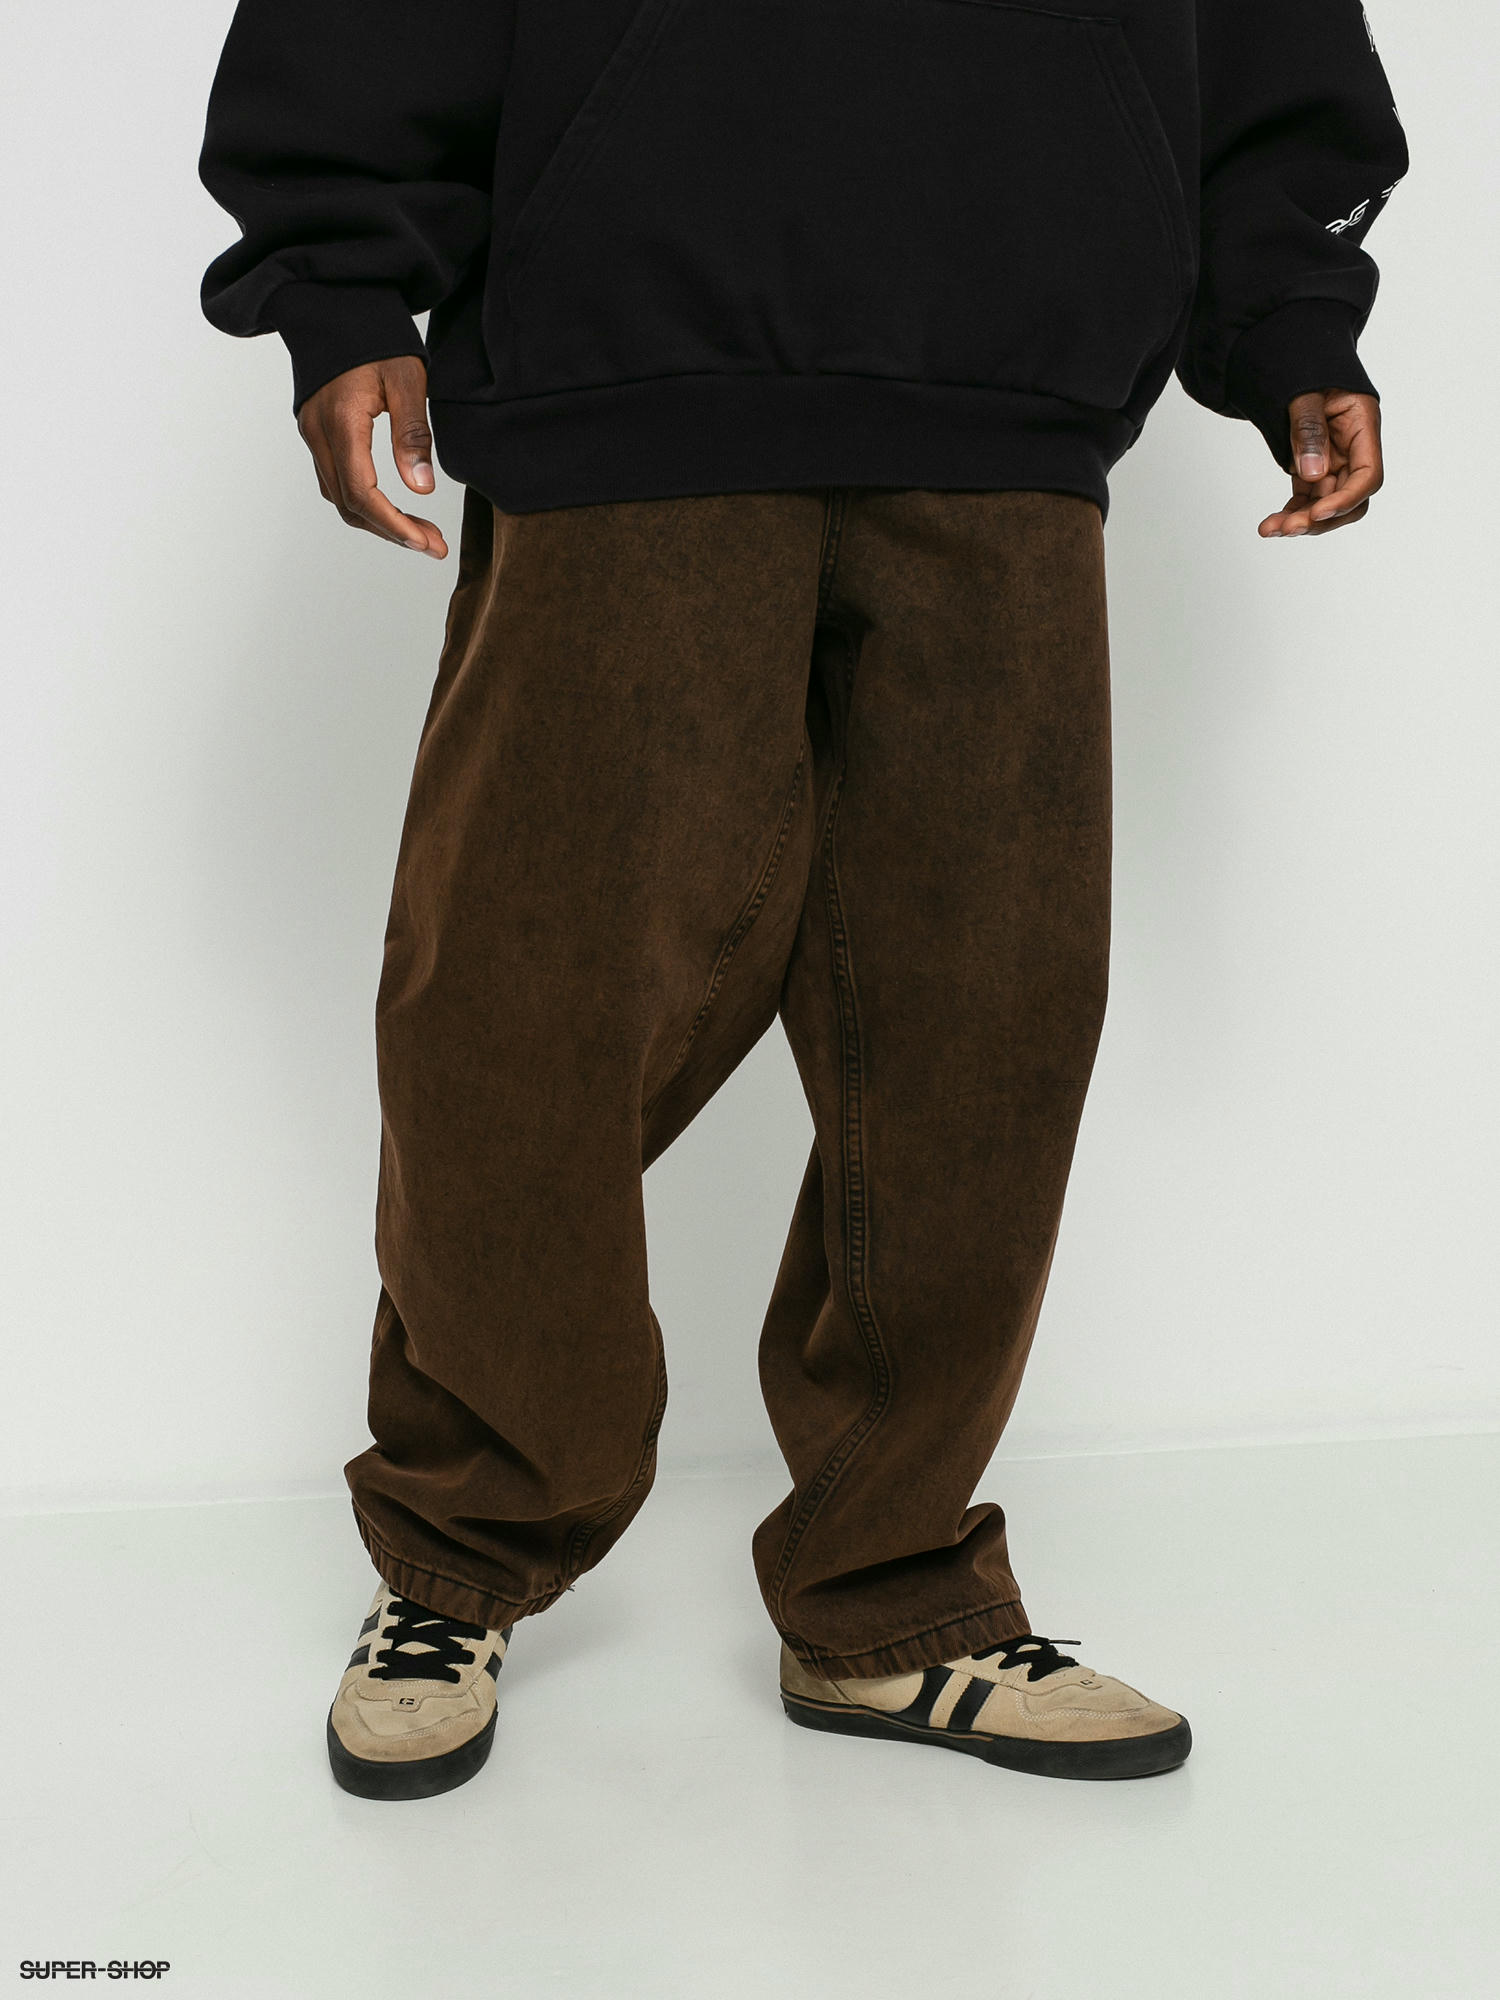 Polar Skate Big Boy Jeans Pants (brown black)